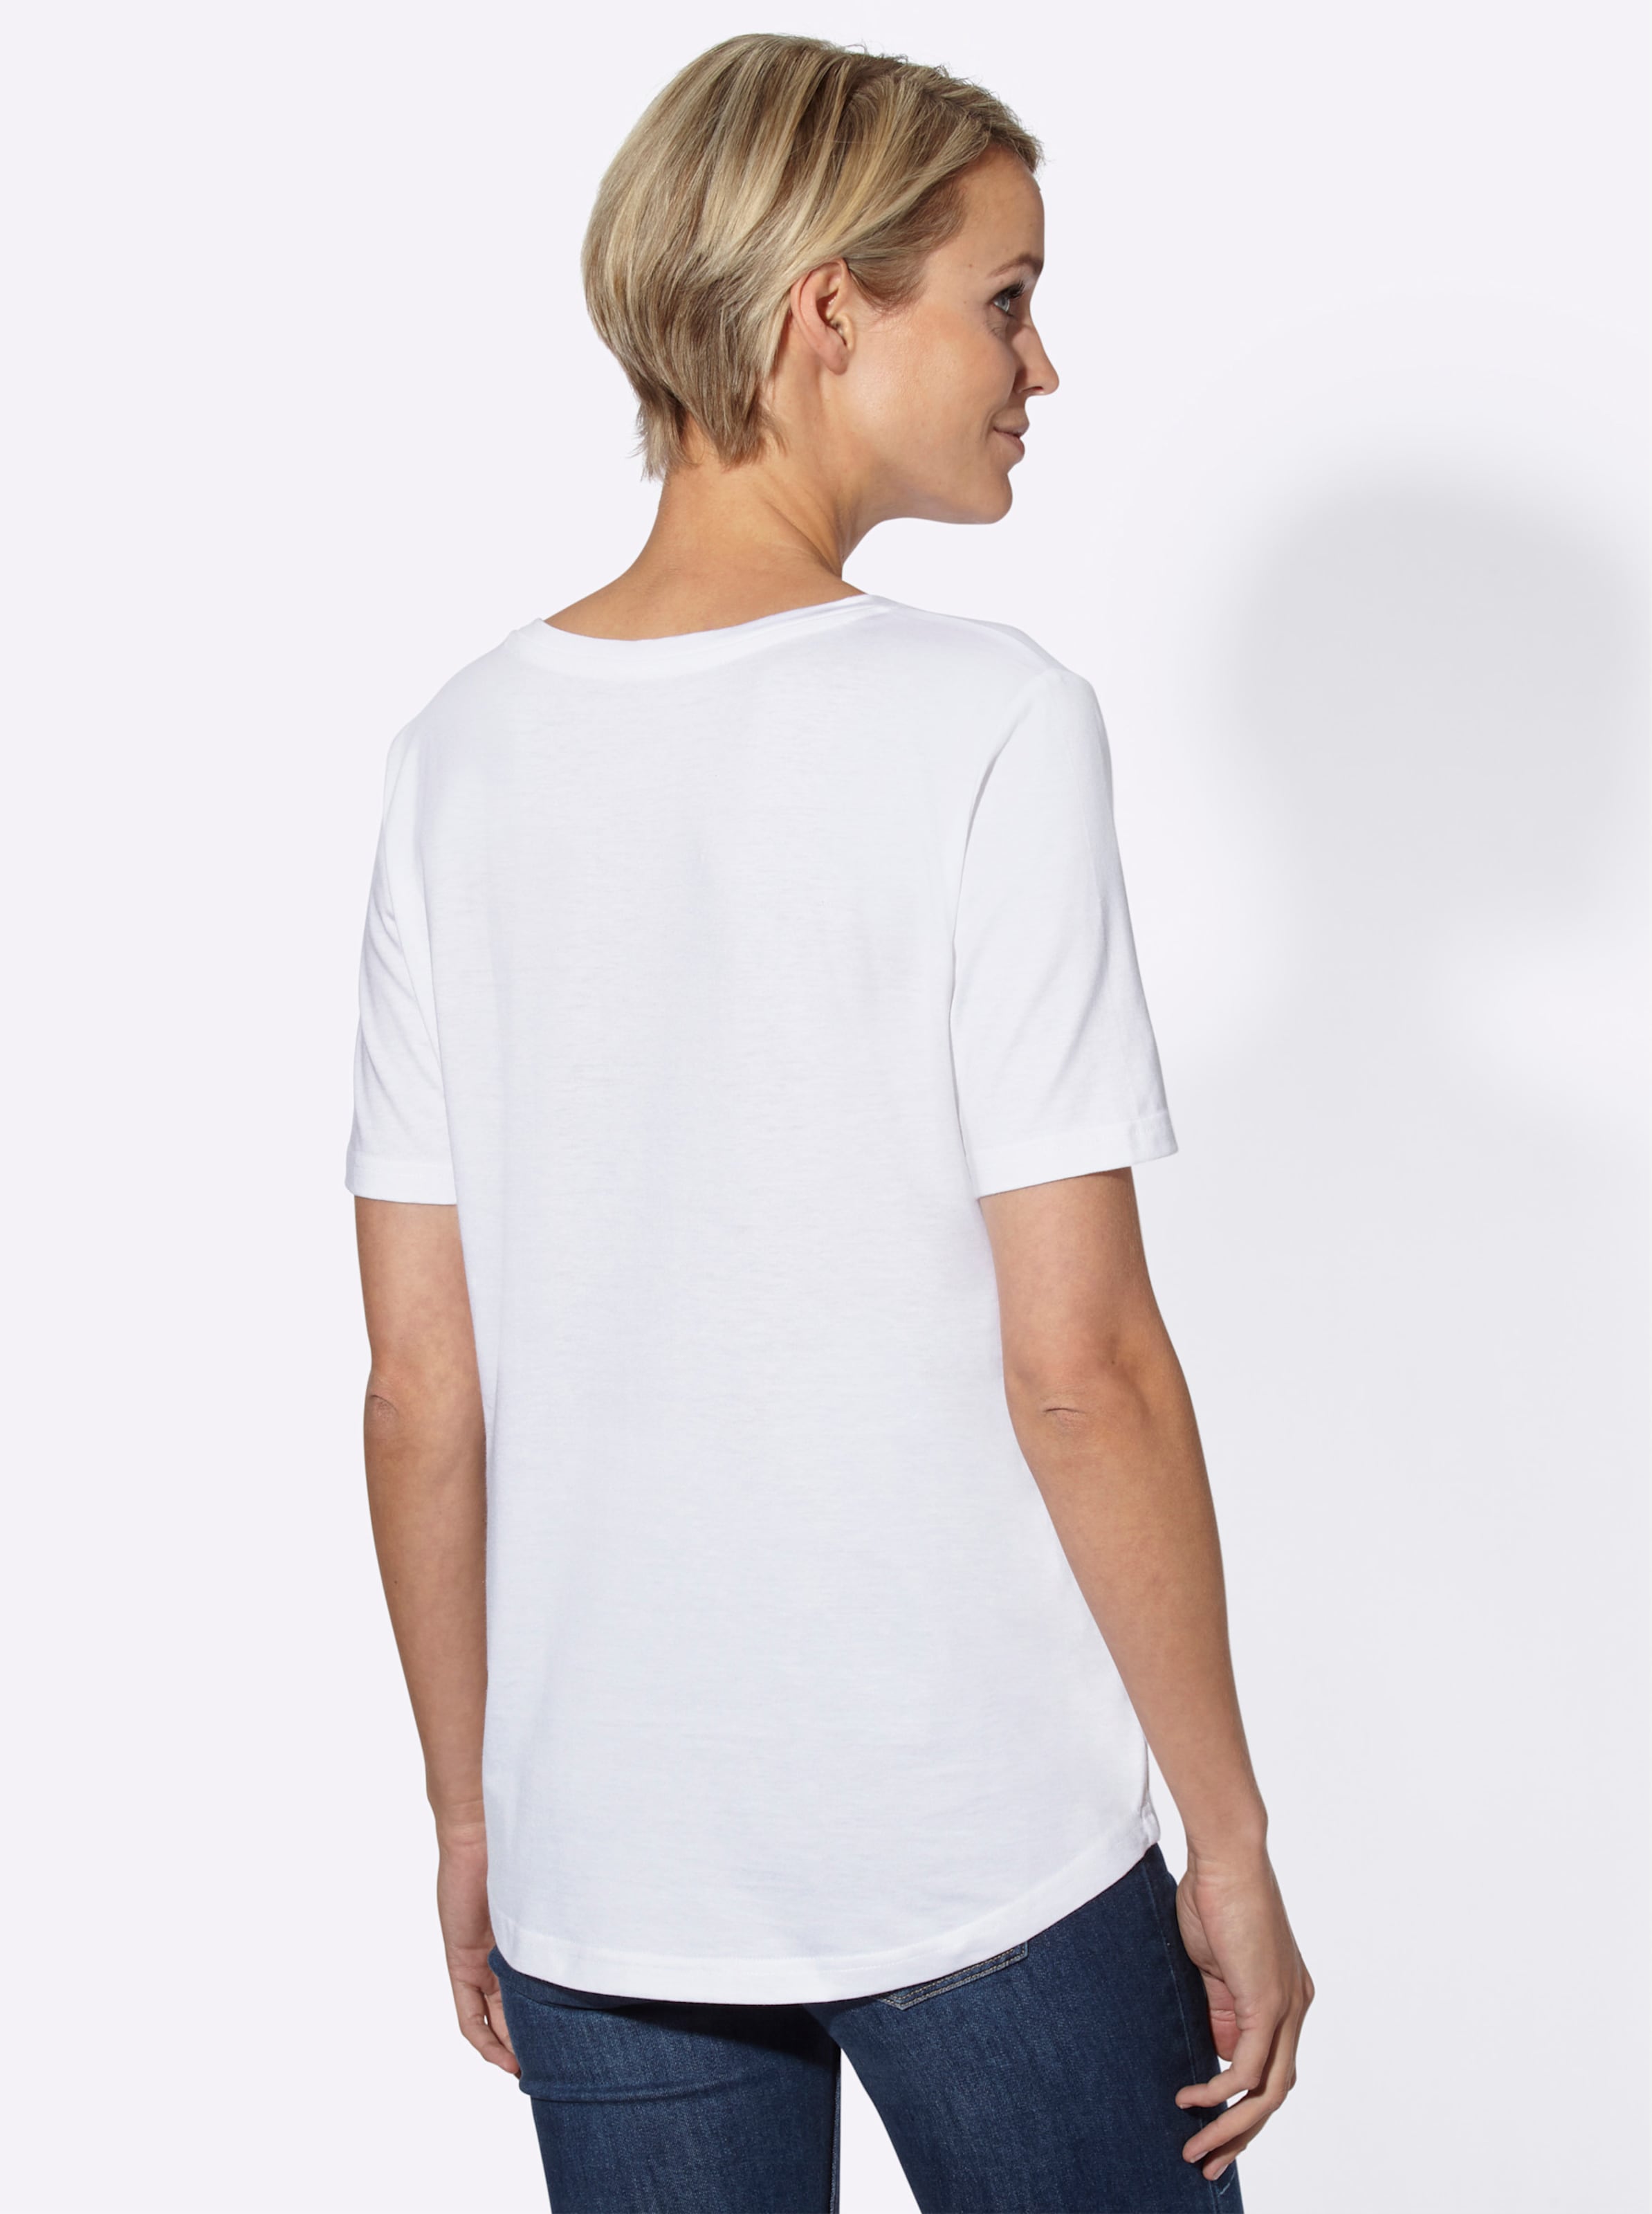 Leicht günstig Kaufen-V-Shirt in weiß von heine. V-Shirt in weiß von heine <![CDATA[Wunderbar weiches und fließendes Shirt. Mit V-Ausschnitt und aufgesetzter Brusttasche. Dank des leicht abgerundeten Saums kann es lässig außen getragen werden.]]>. 